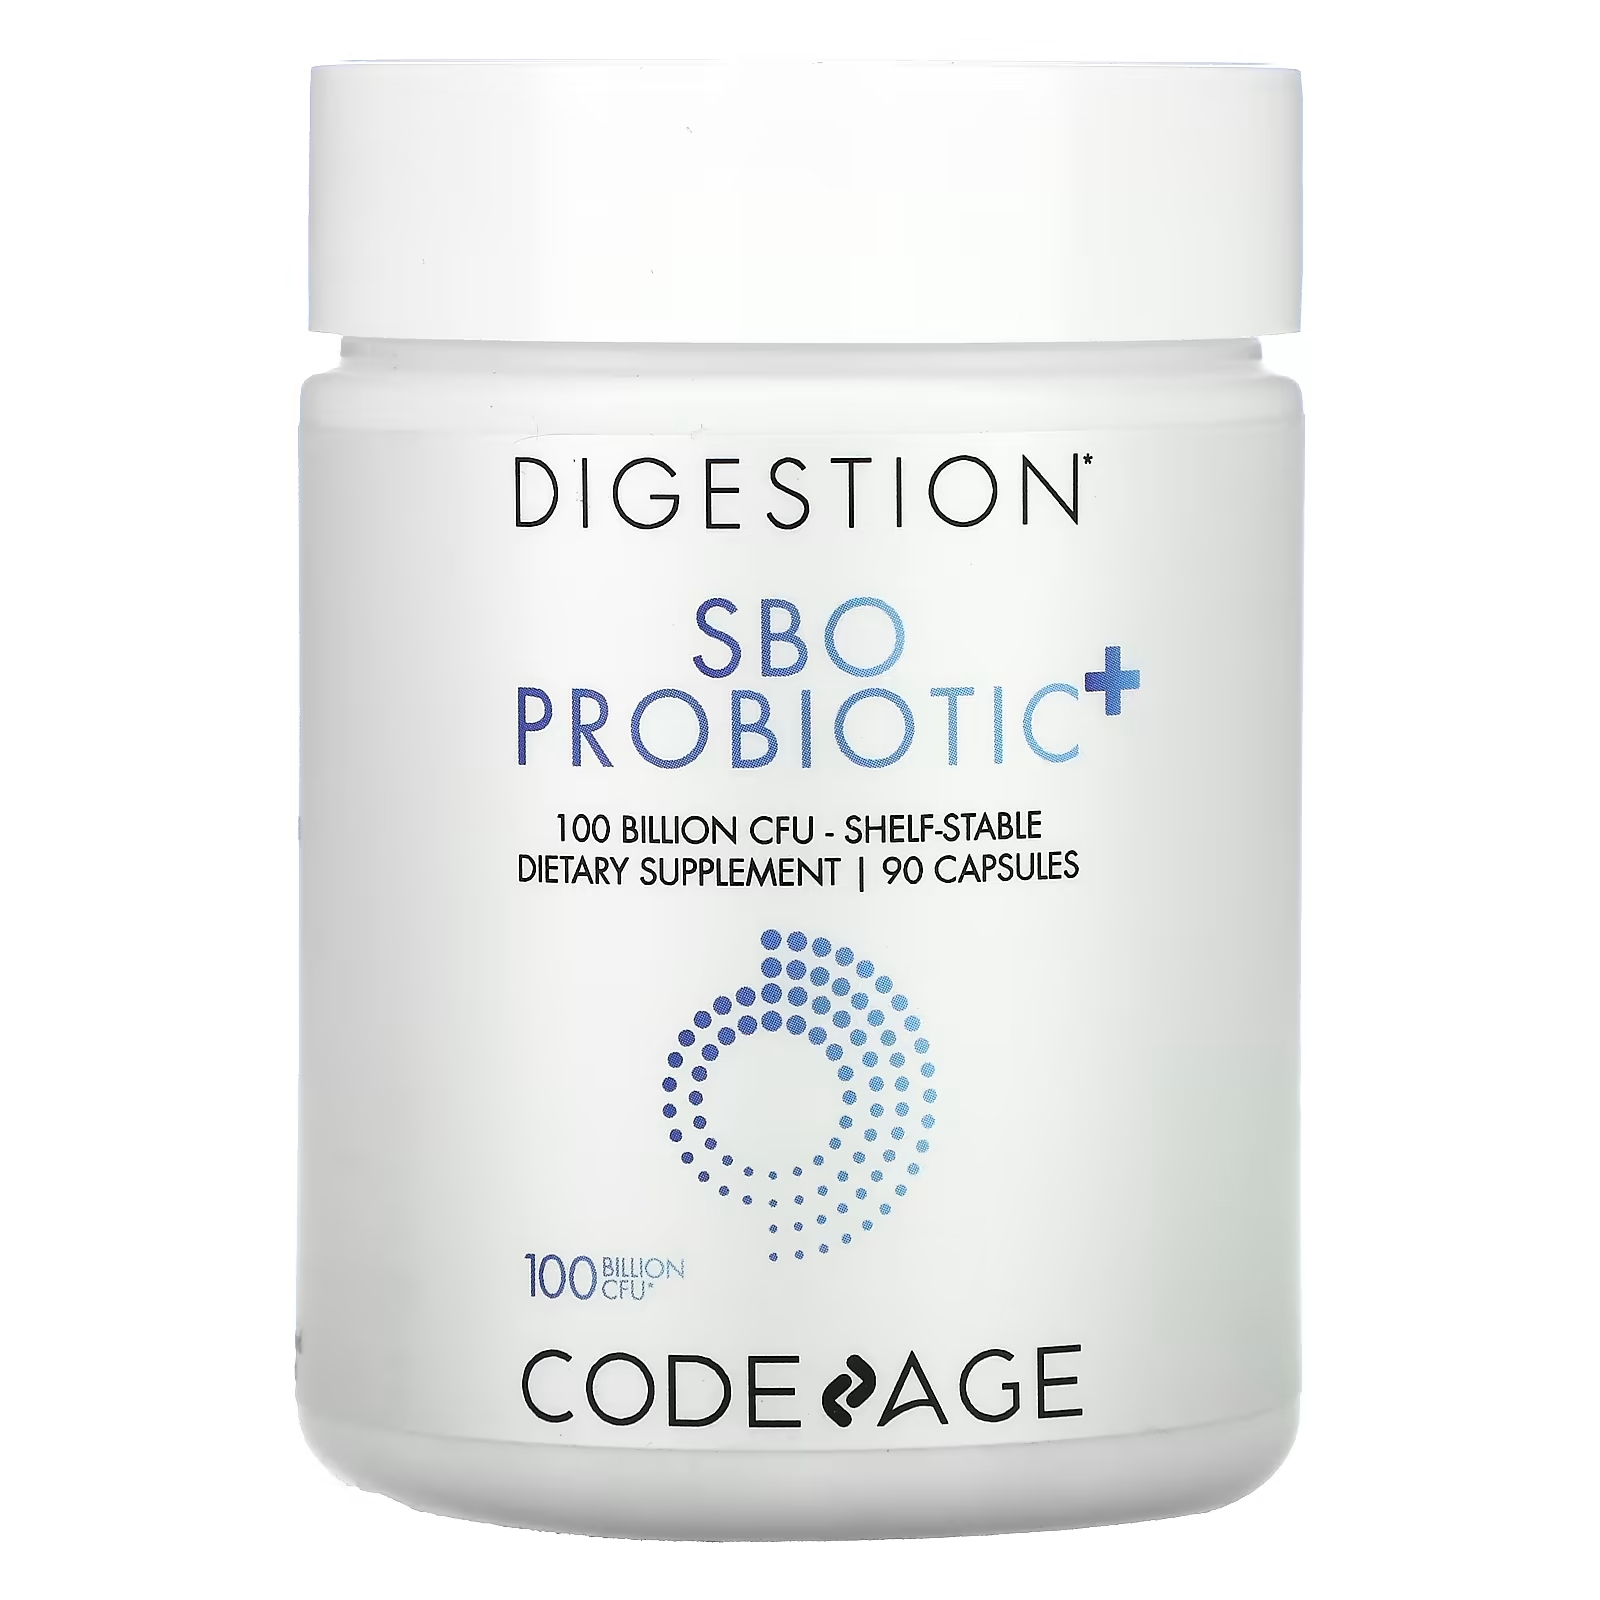 Codeage Для пищеварения пробиотик SBO + длительного хранения 100 млрд КОЕ, 90 капсул codeage пробиотик для кожи длительного хранения 50 млрд кое 60 капсул